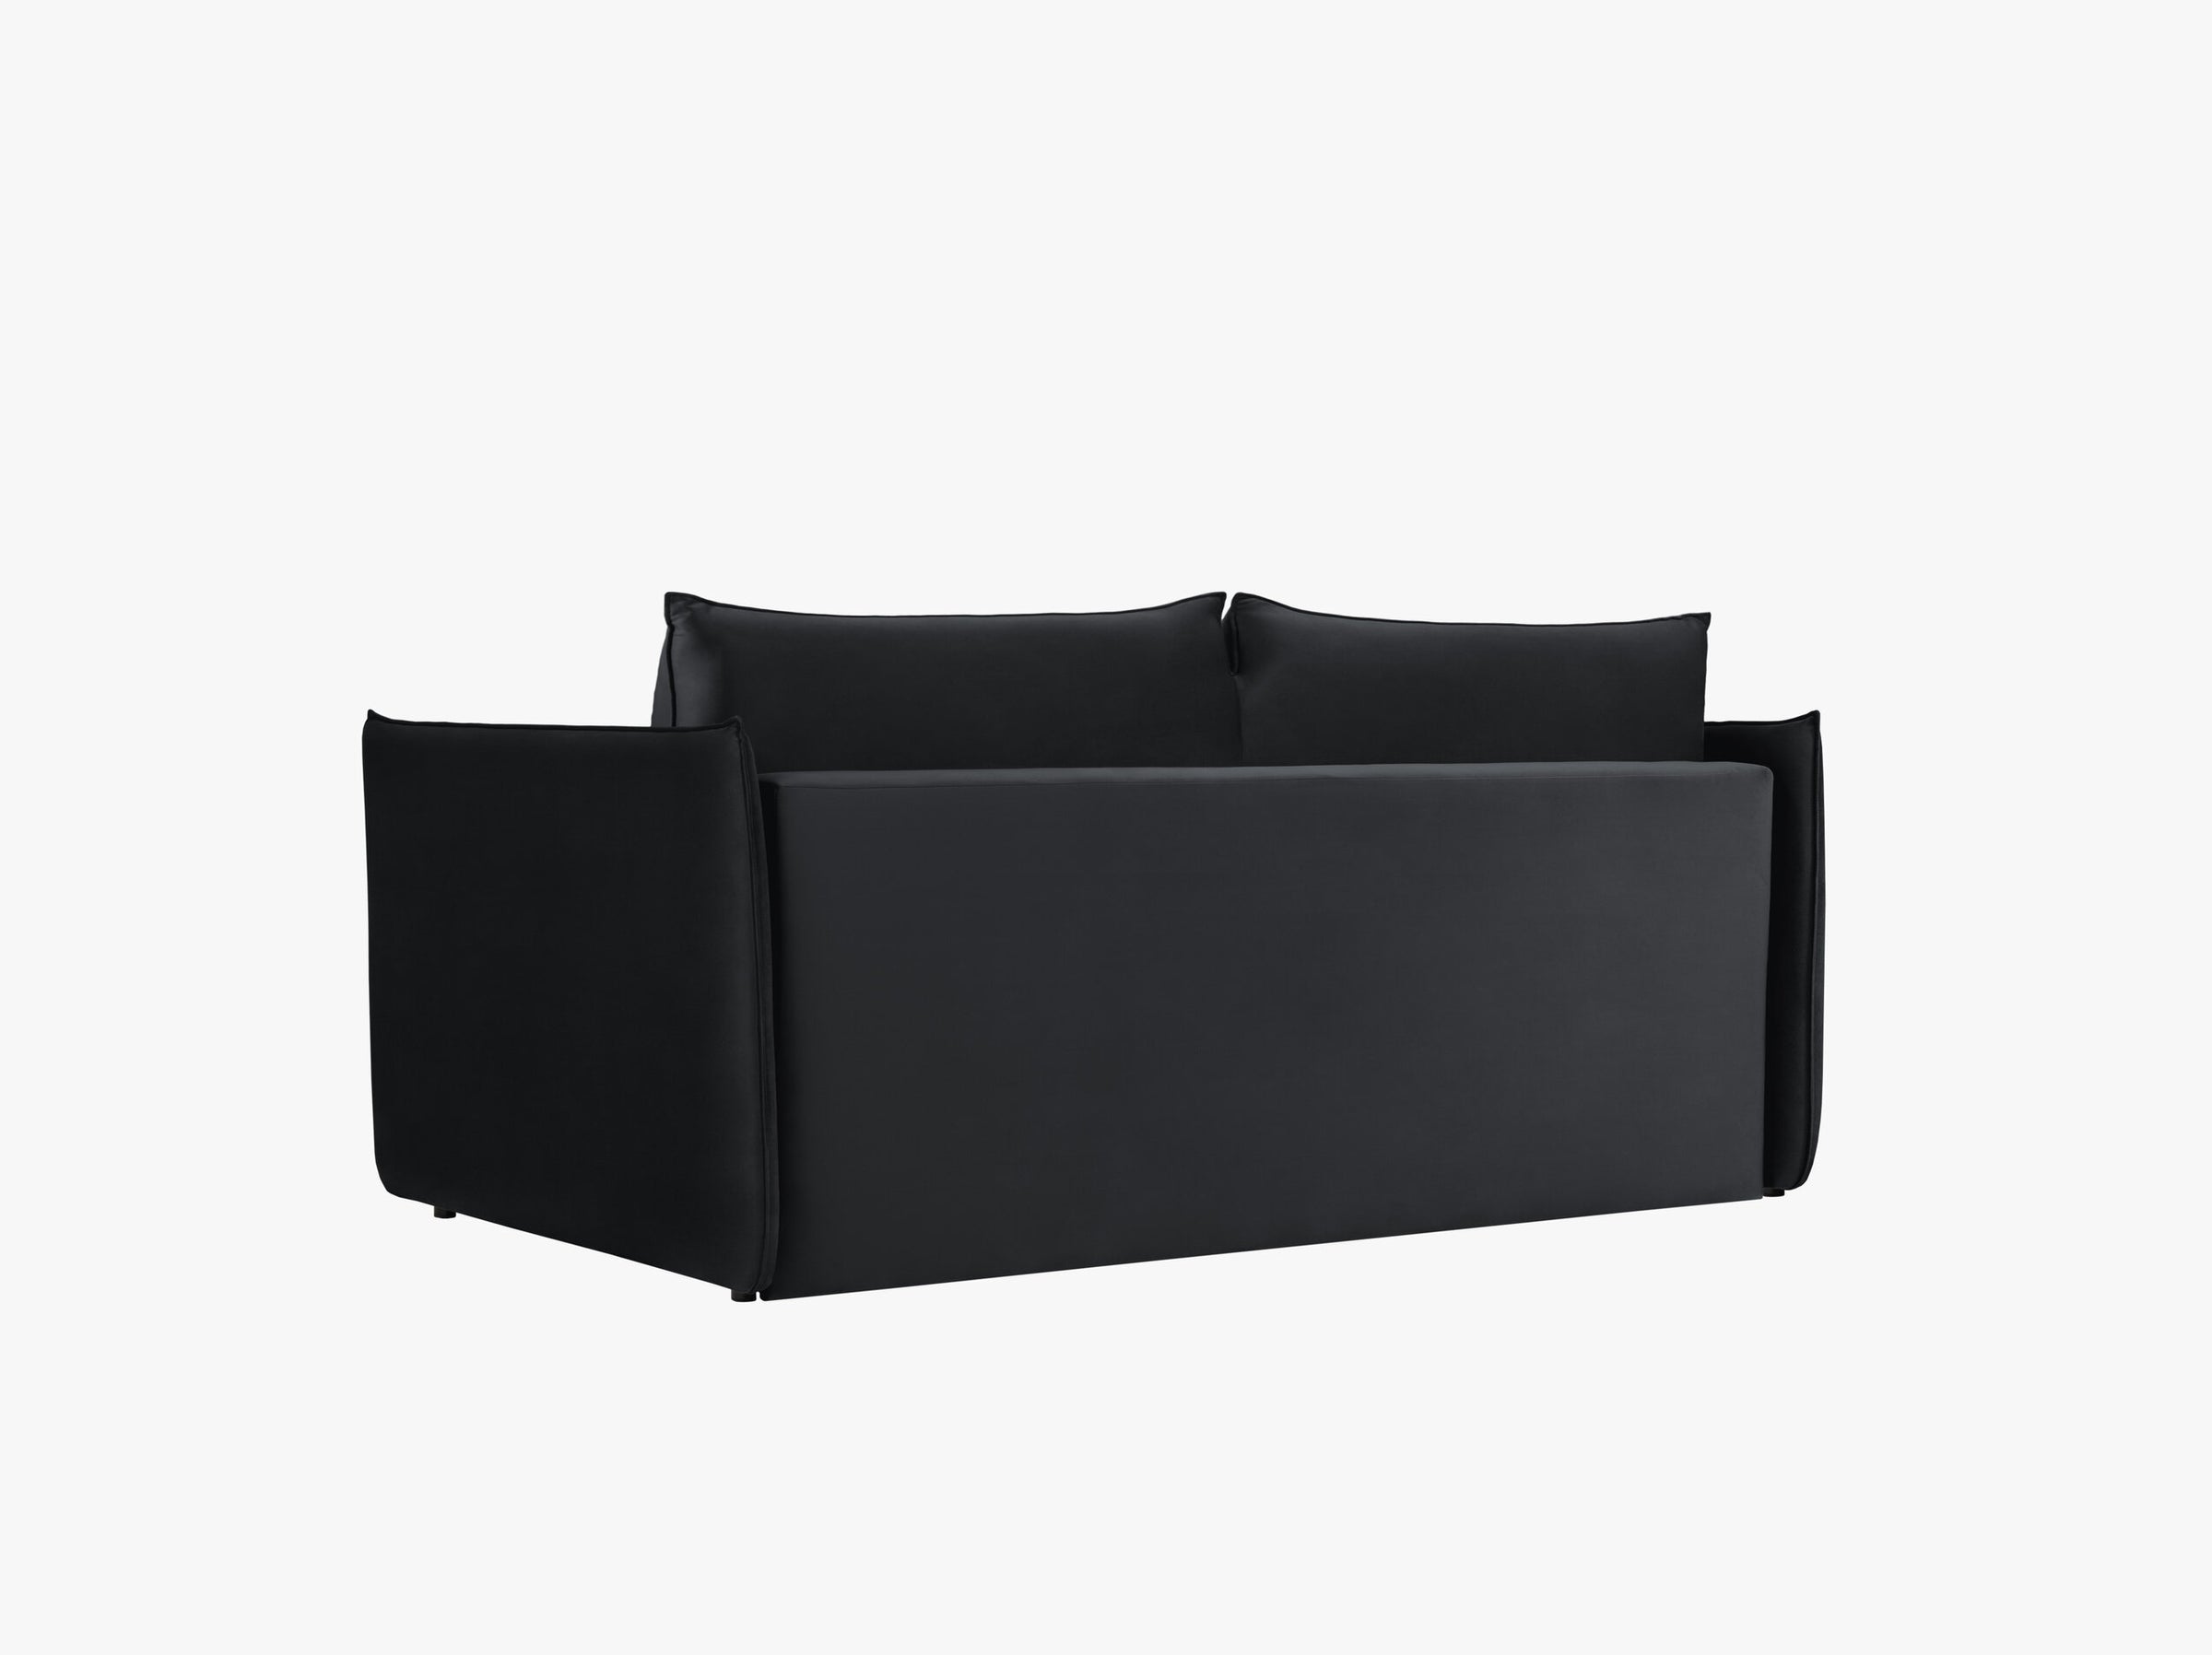 Agate sofas velvet black